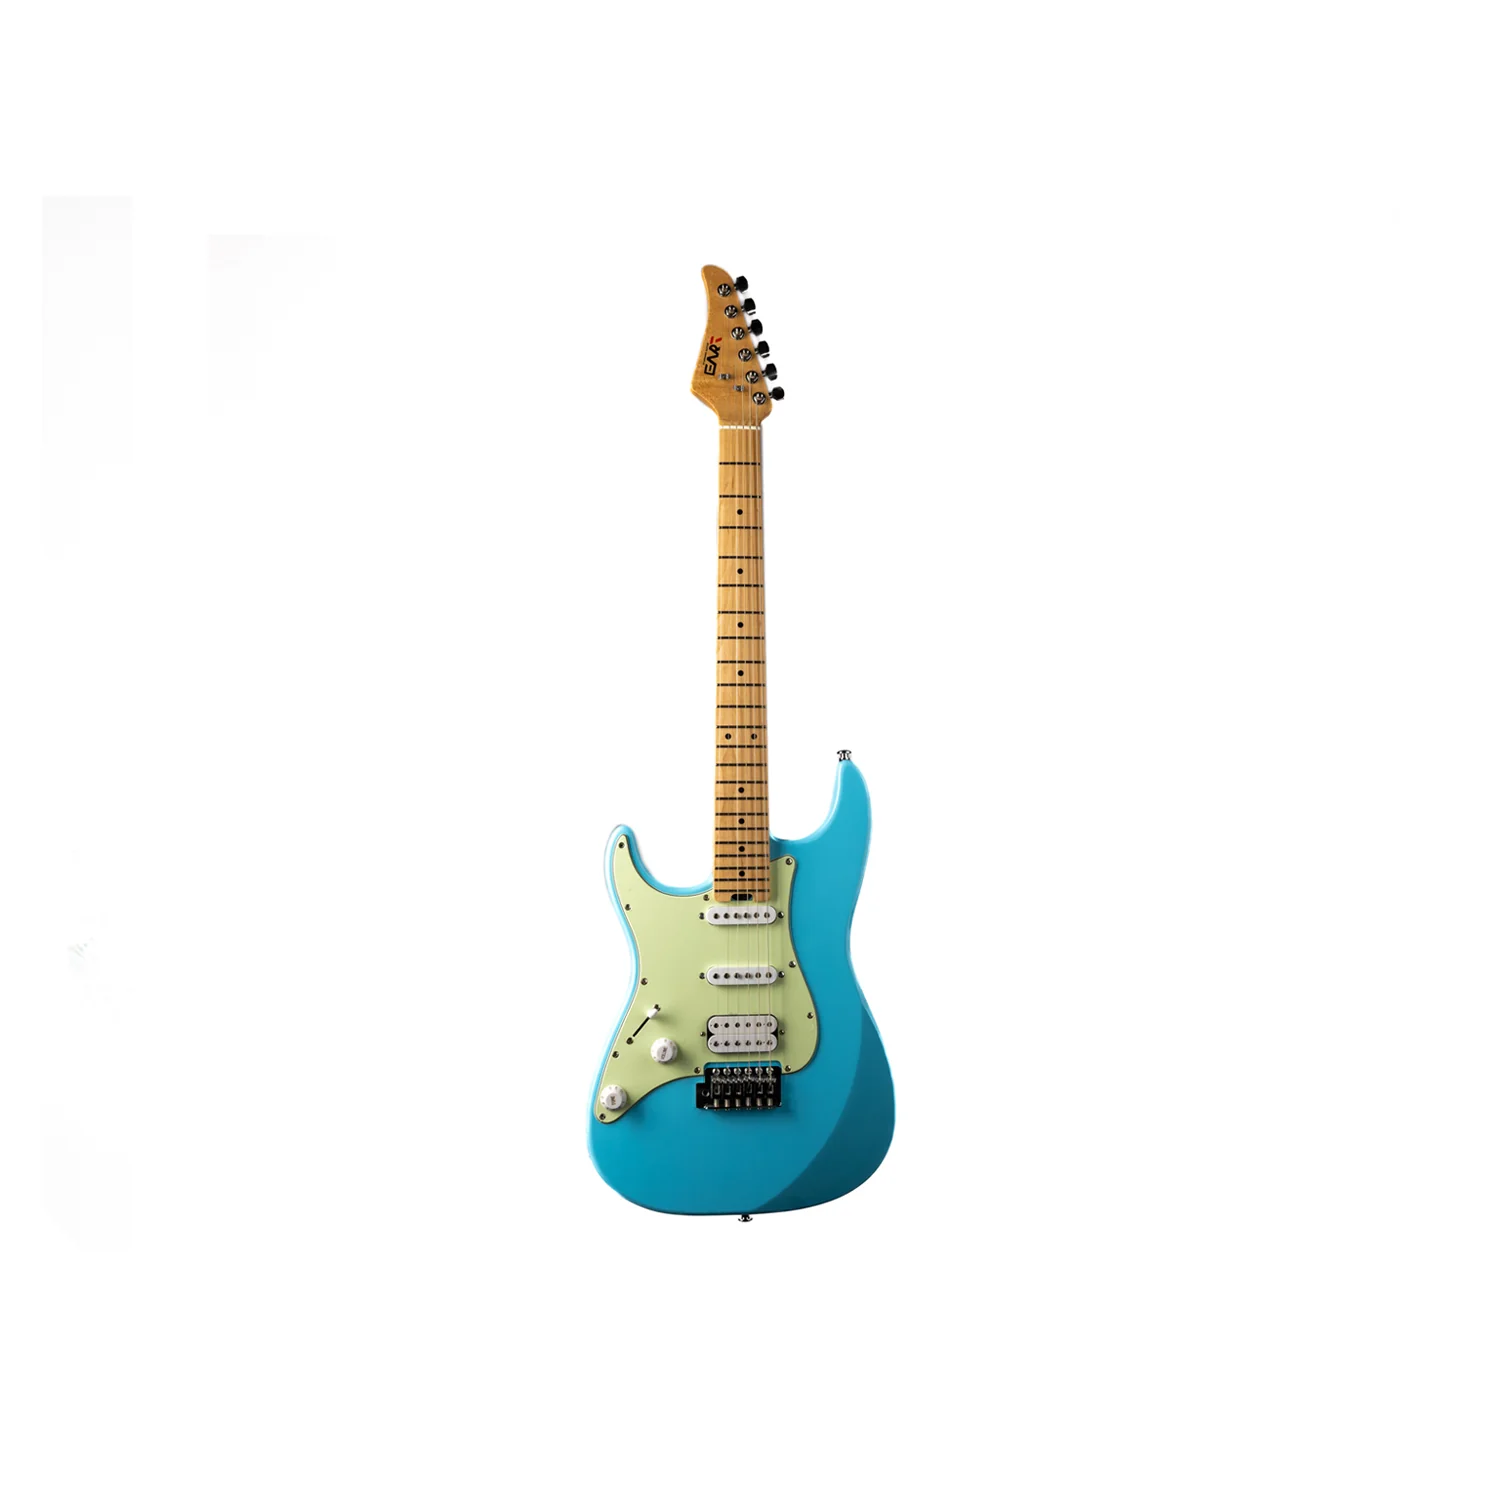 גיטרה חשמלית שמאלית Eart Guitars E-1 Model Left Hand HSS Pickups Stainless Steel Electric Guitars